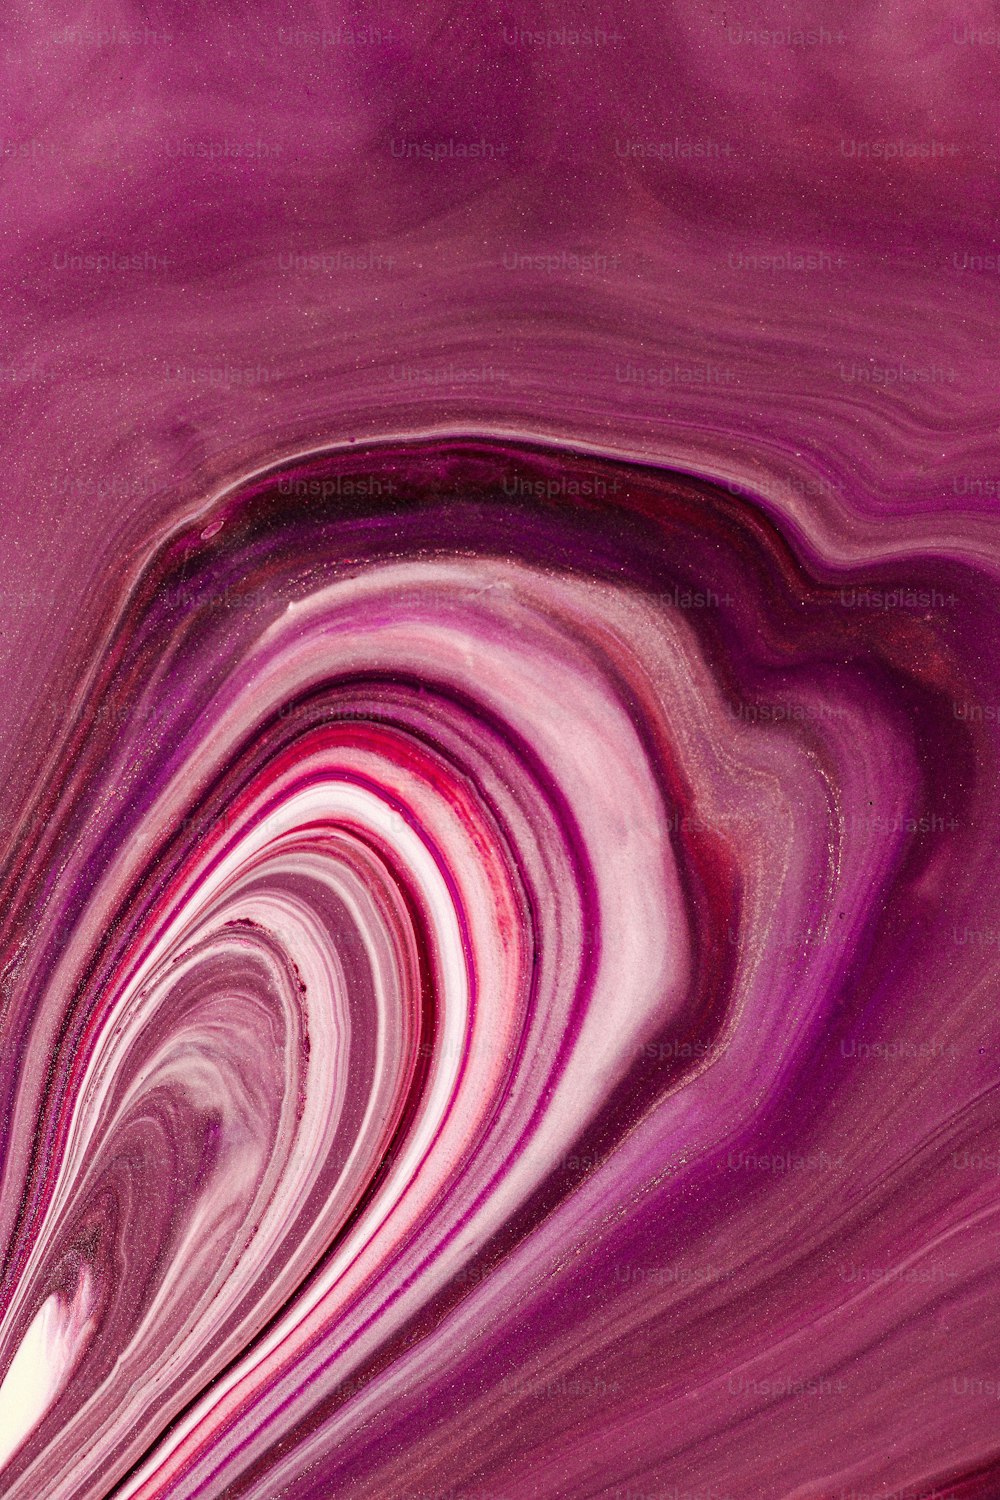 Un primer plano de un remolino púrpura y blanco